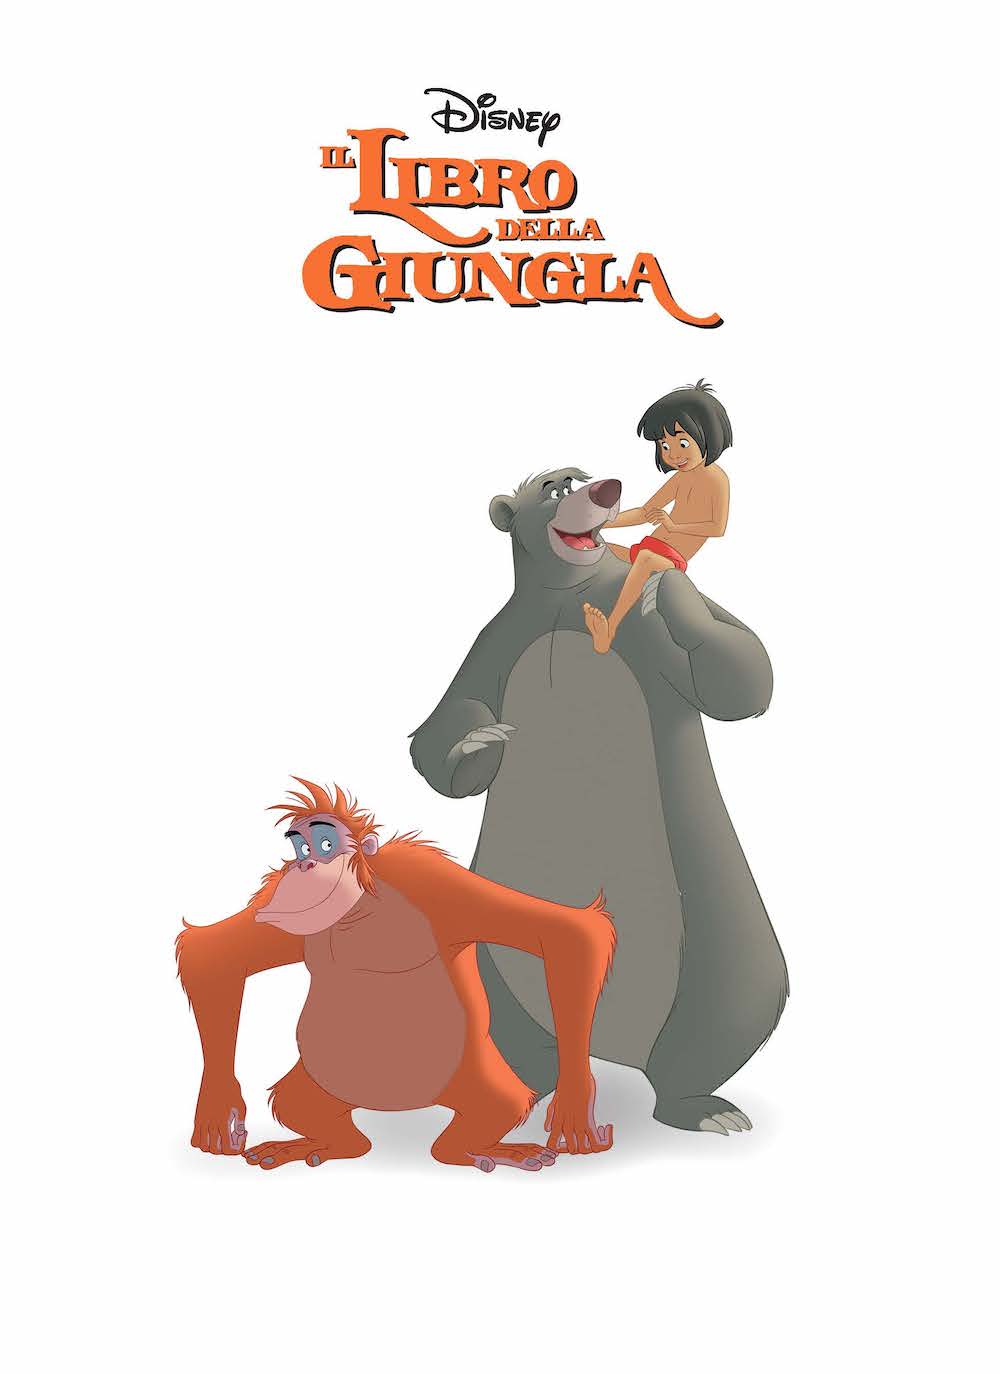 Disney Classics Collection - Le storie più belle - Il re leone, Dumbo, Il libro della giungla